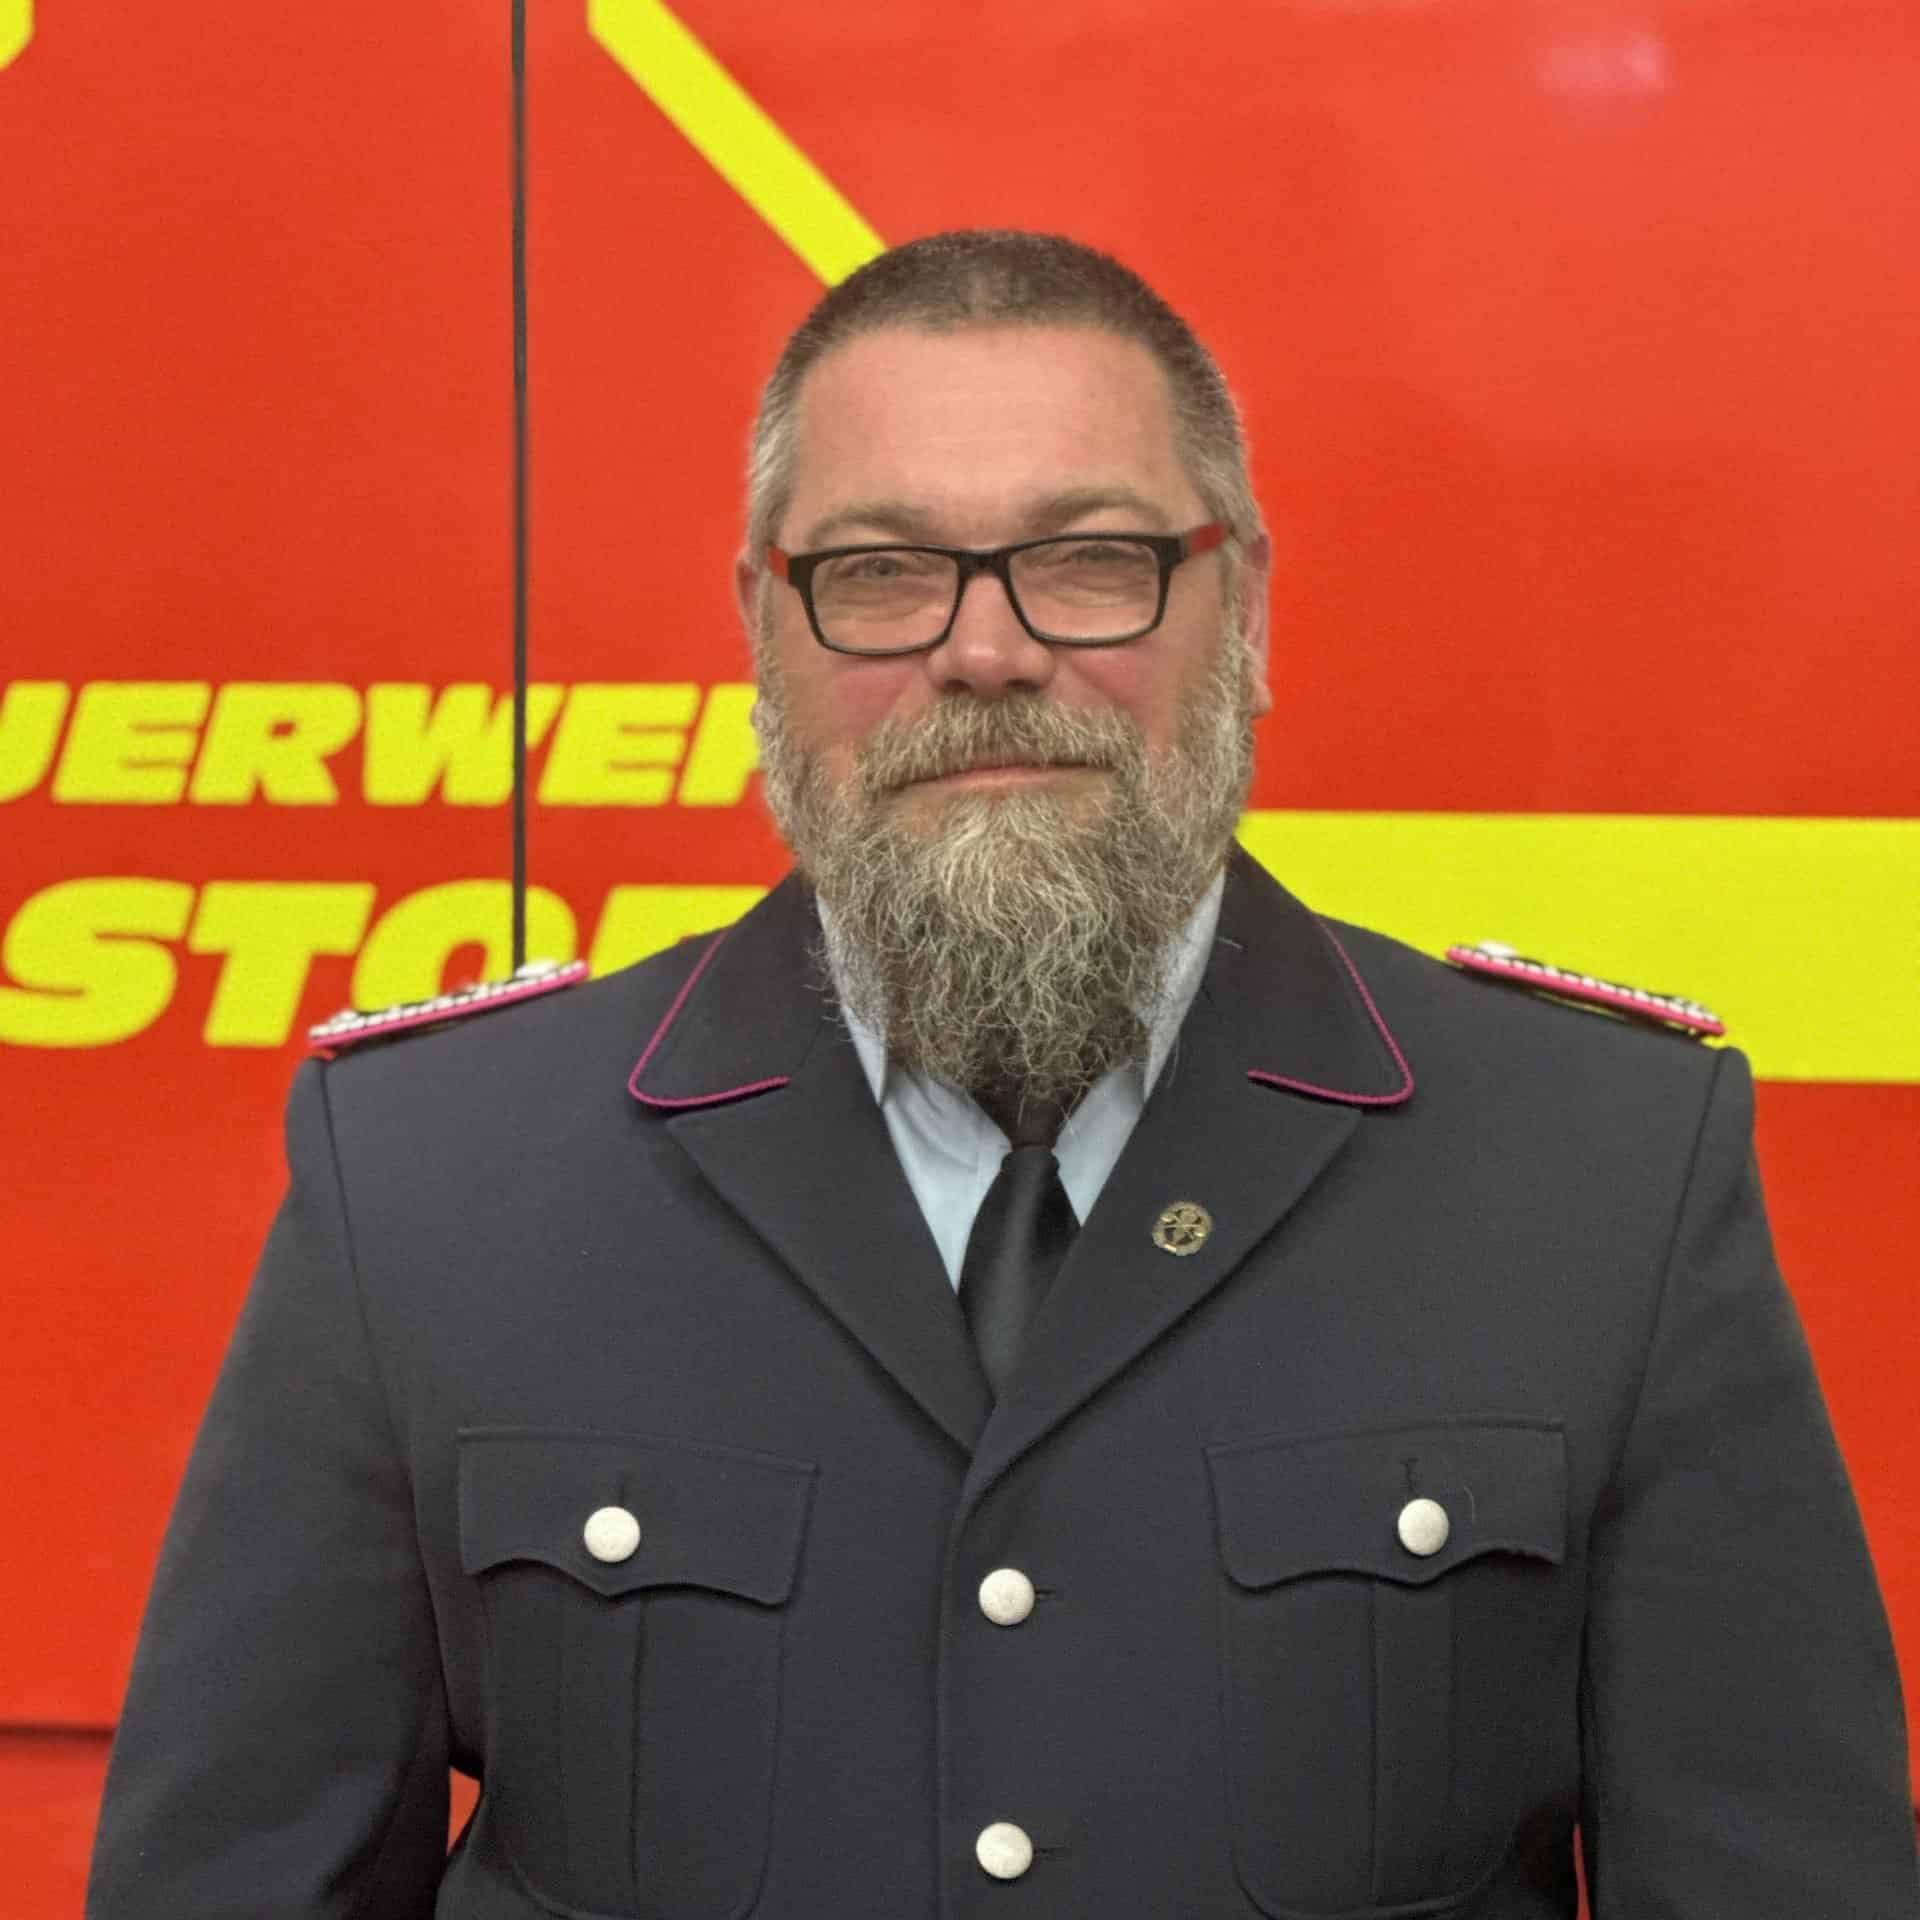 Stellvertretender-Gruppenführer-Gruppe-1-Freiwillige-Feuerwehr-Elstorf